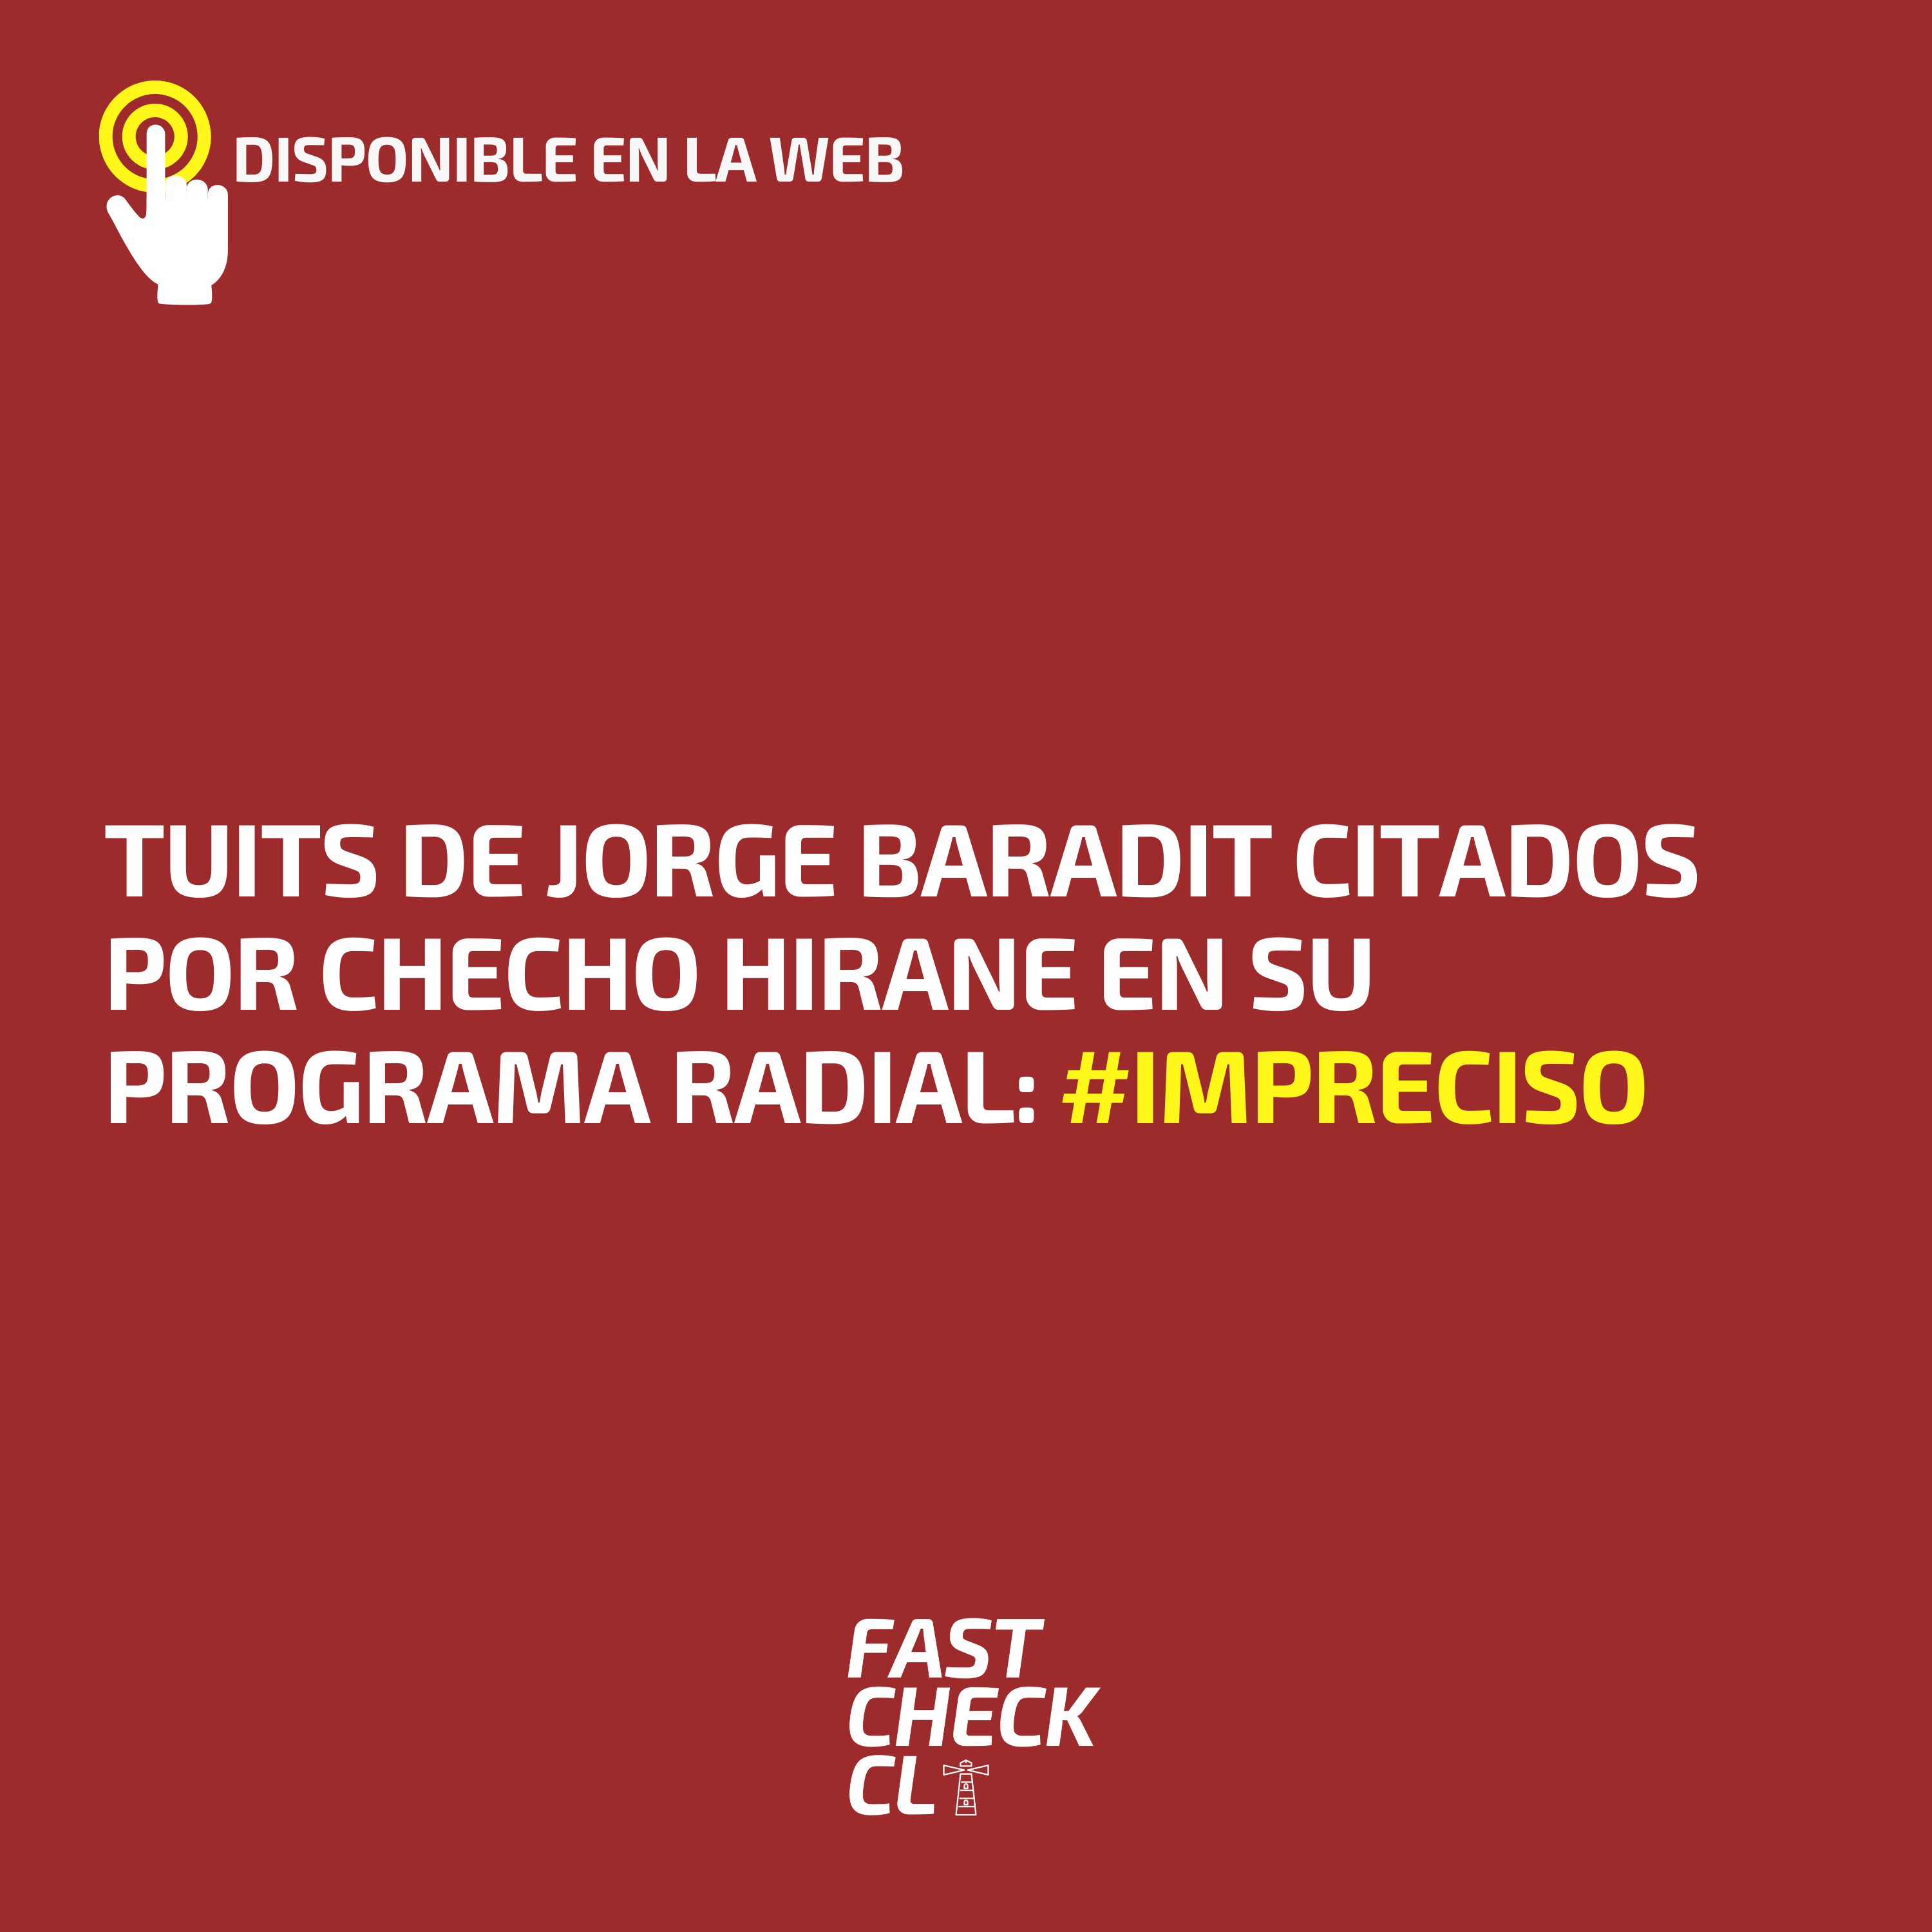 You are currently viewing Tuits de Jorge Baradit citados por Checho Hirane en su programa radial: #Impreciso